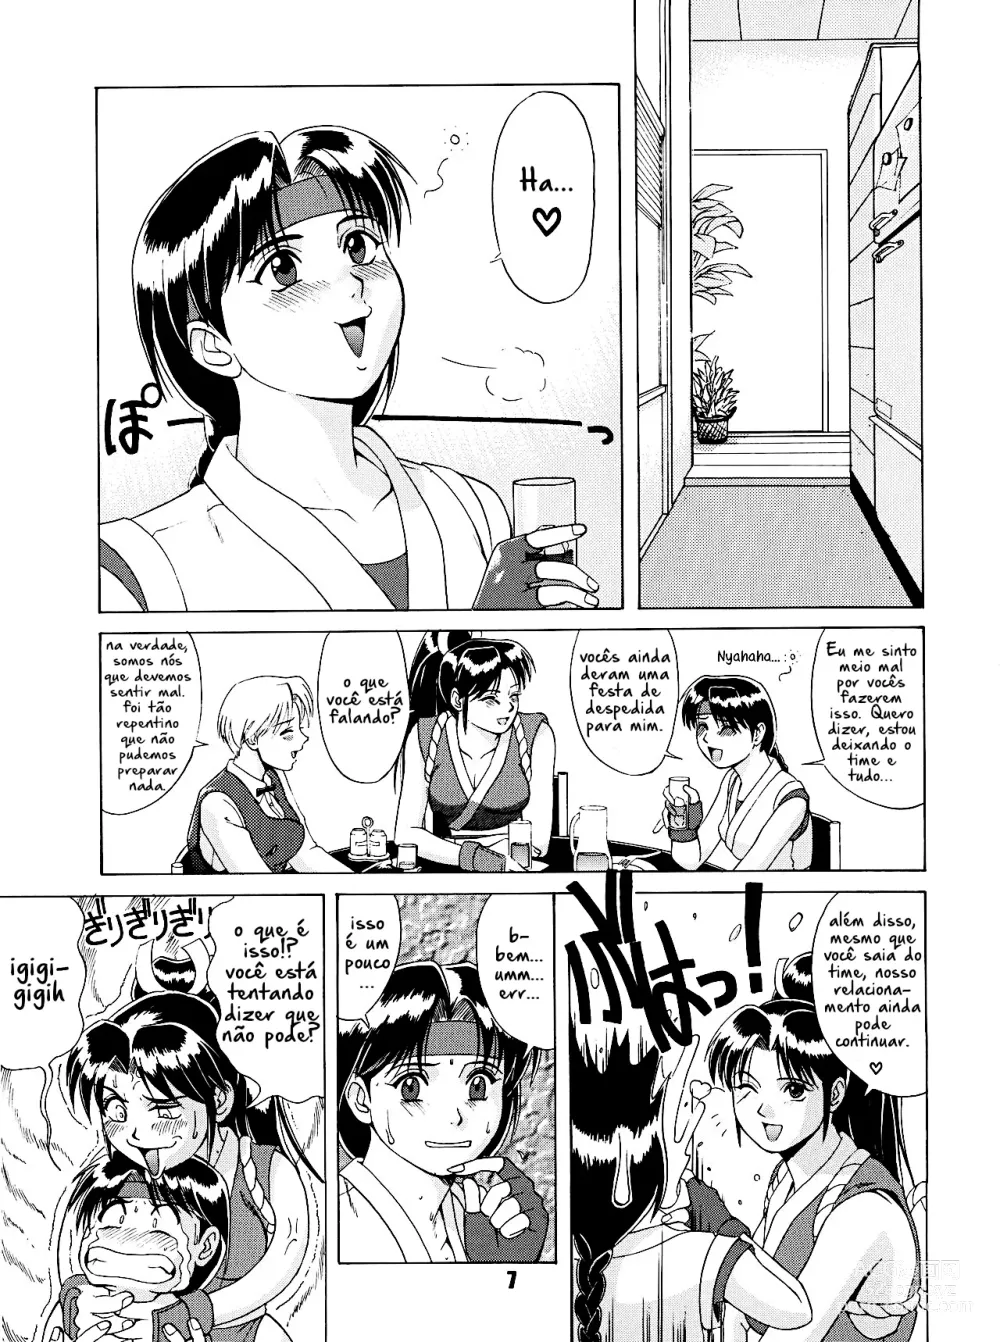 Page 6 of doujinshi The Yuri & Friends 96